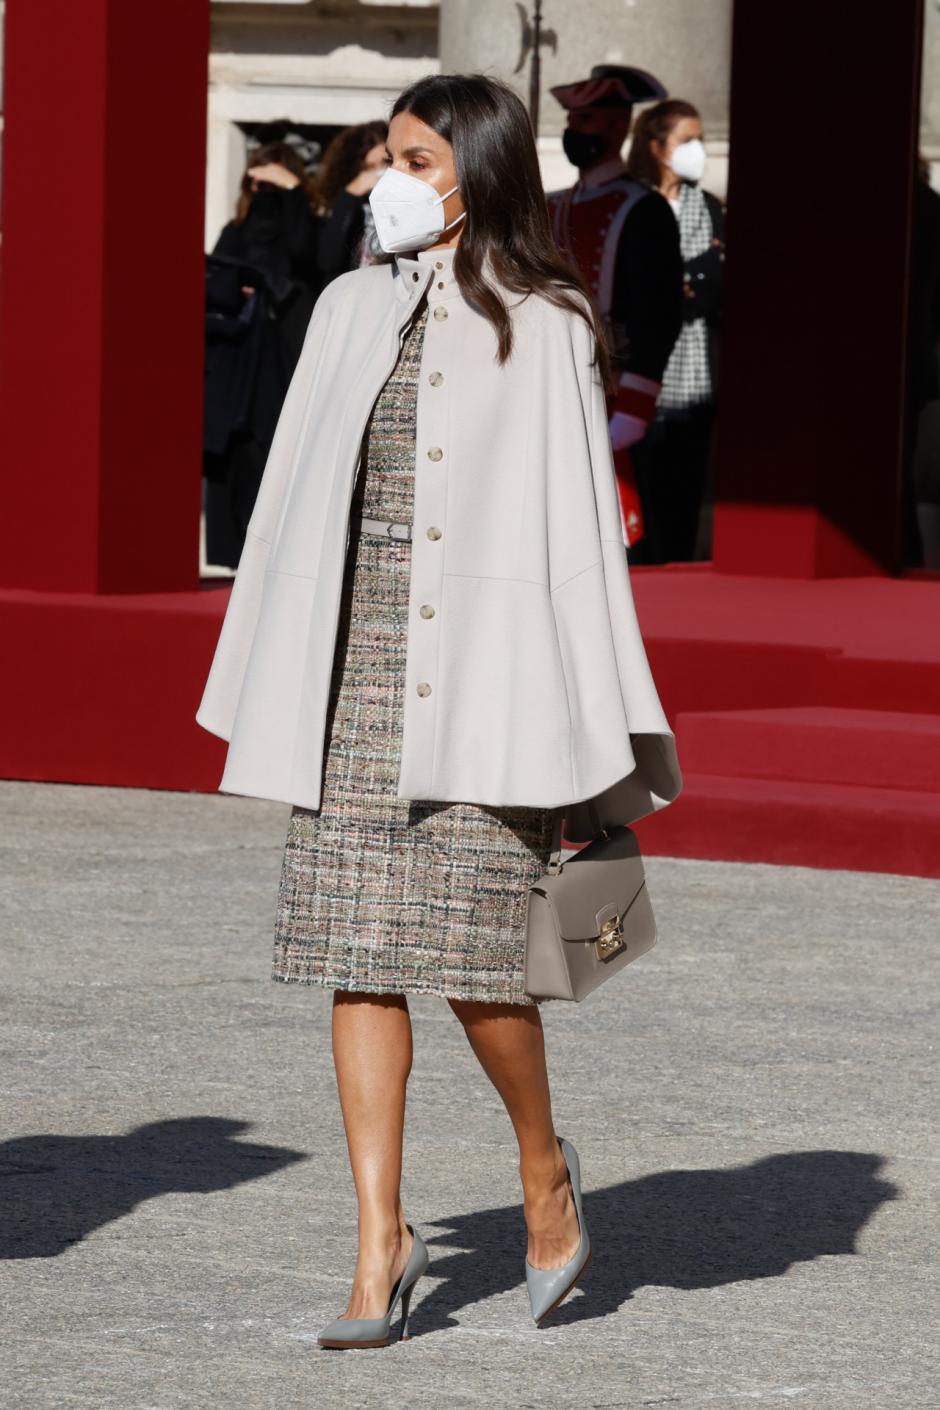 Reina Letizia con mini capa beige al recibir a Sergio Mattarella en Madrid